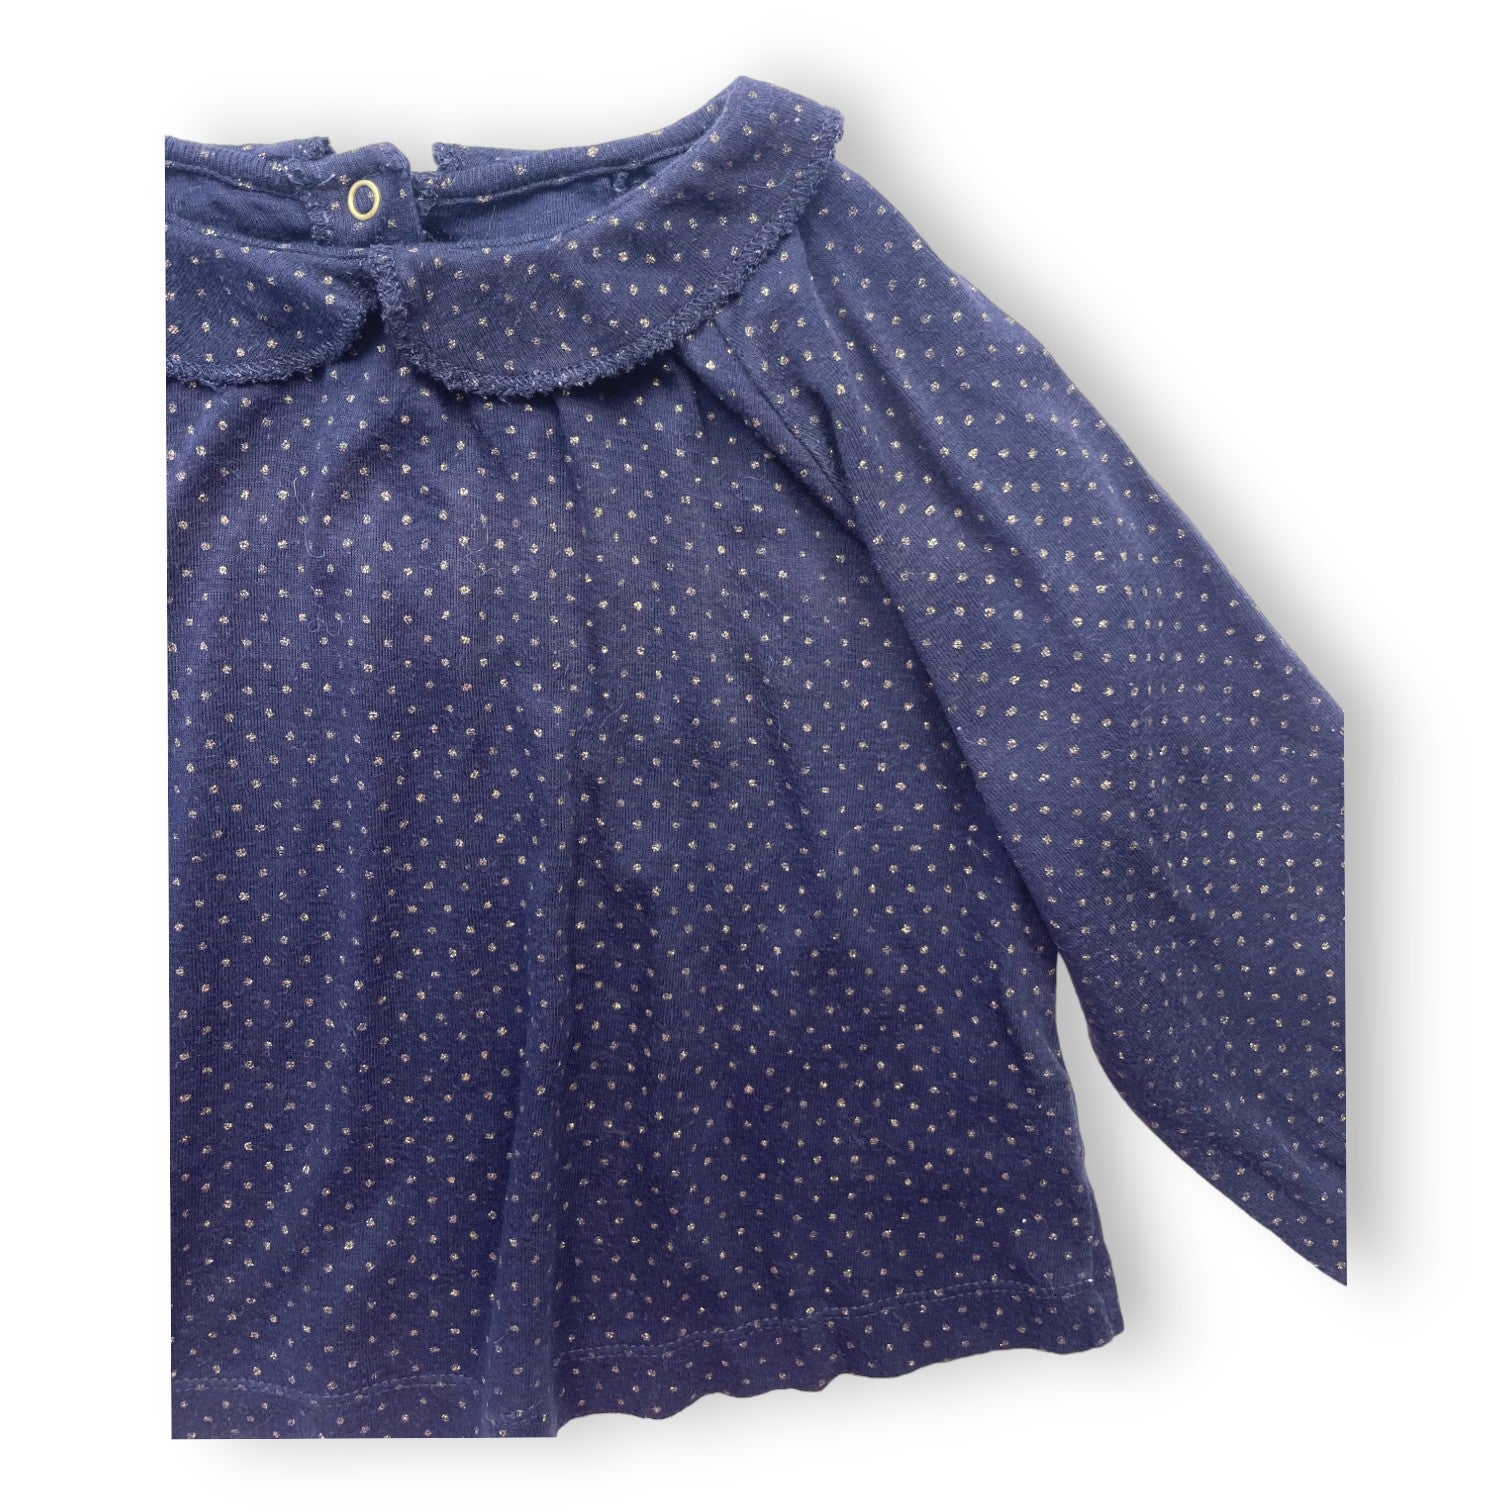 PETIT BATEAU - T shirt manches longues bleu marine à pois dorés - 18 mois